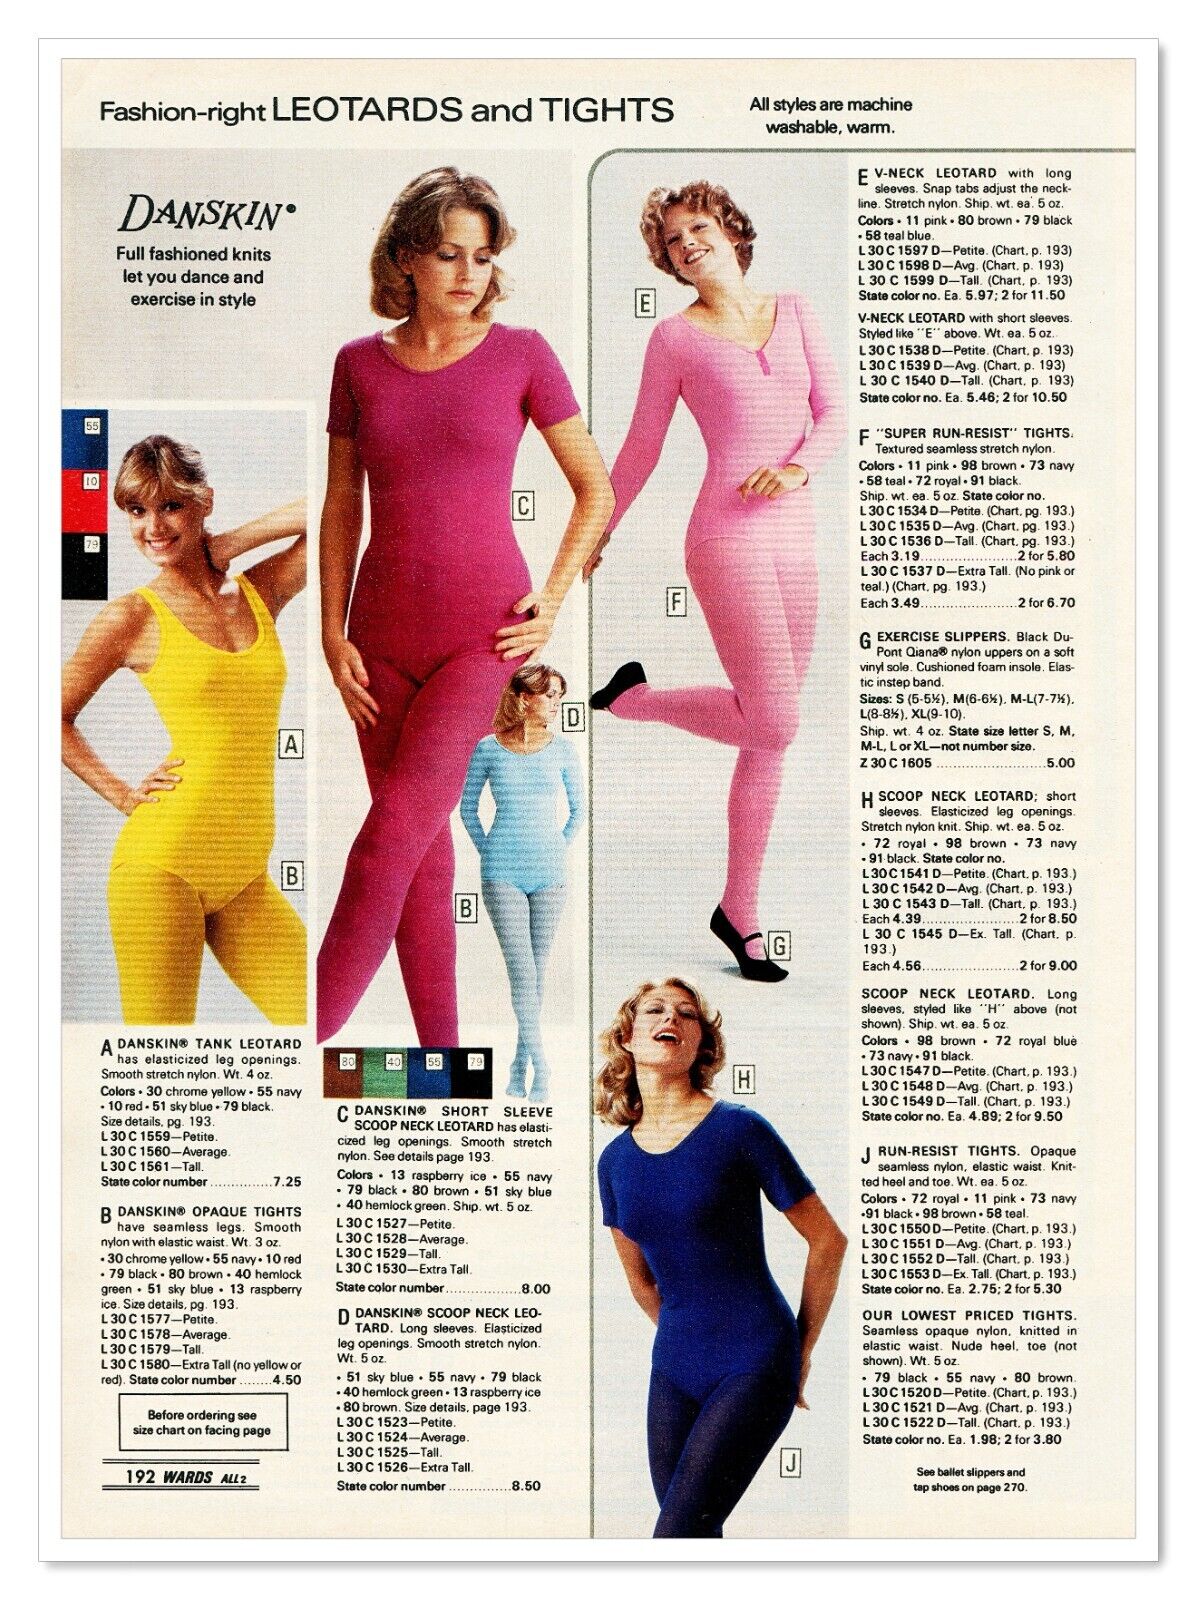 Montgomery Wards Danskin Leotards 70s Fashion Vintage 1977 Print Magazine Ad